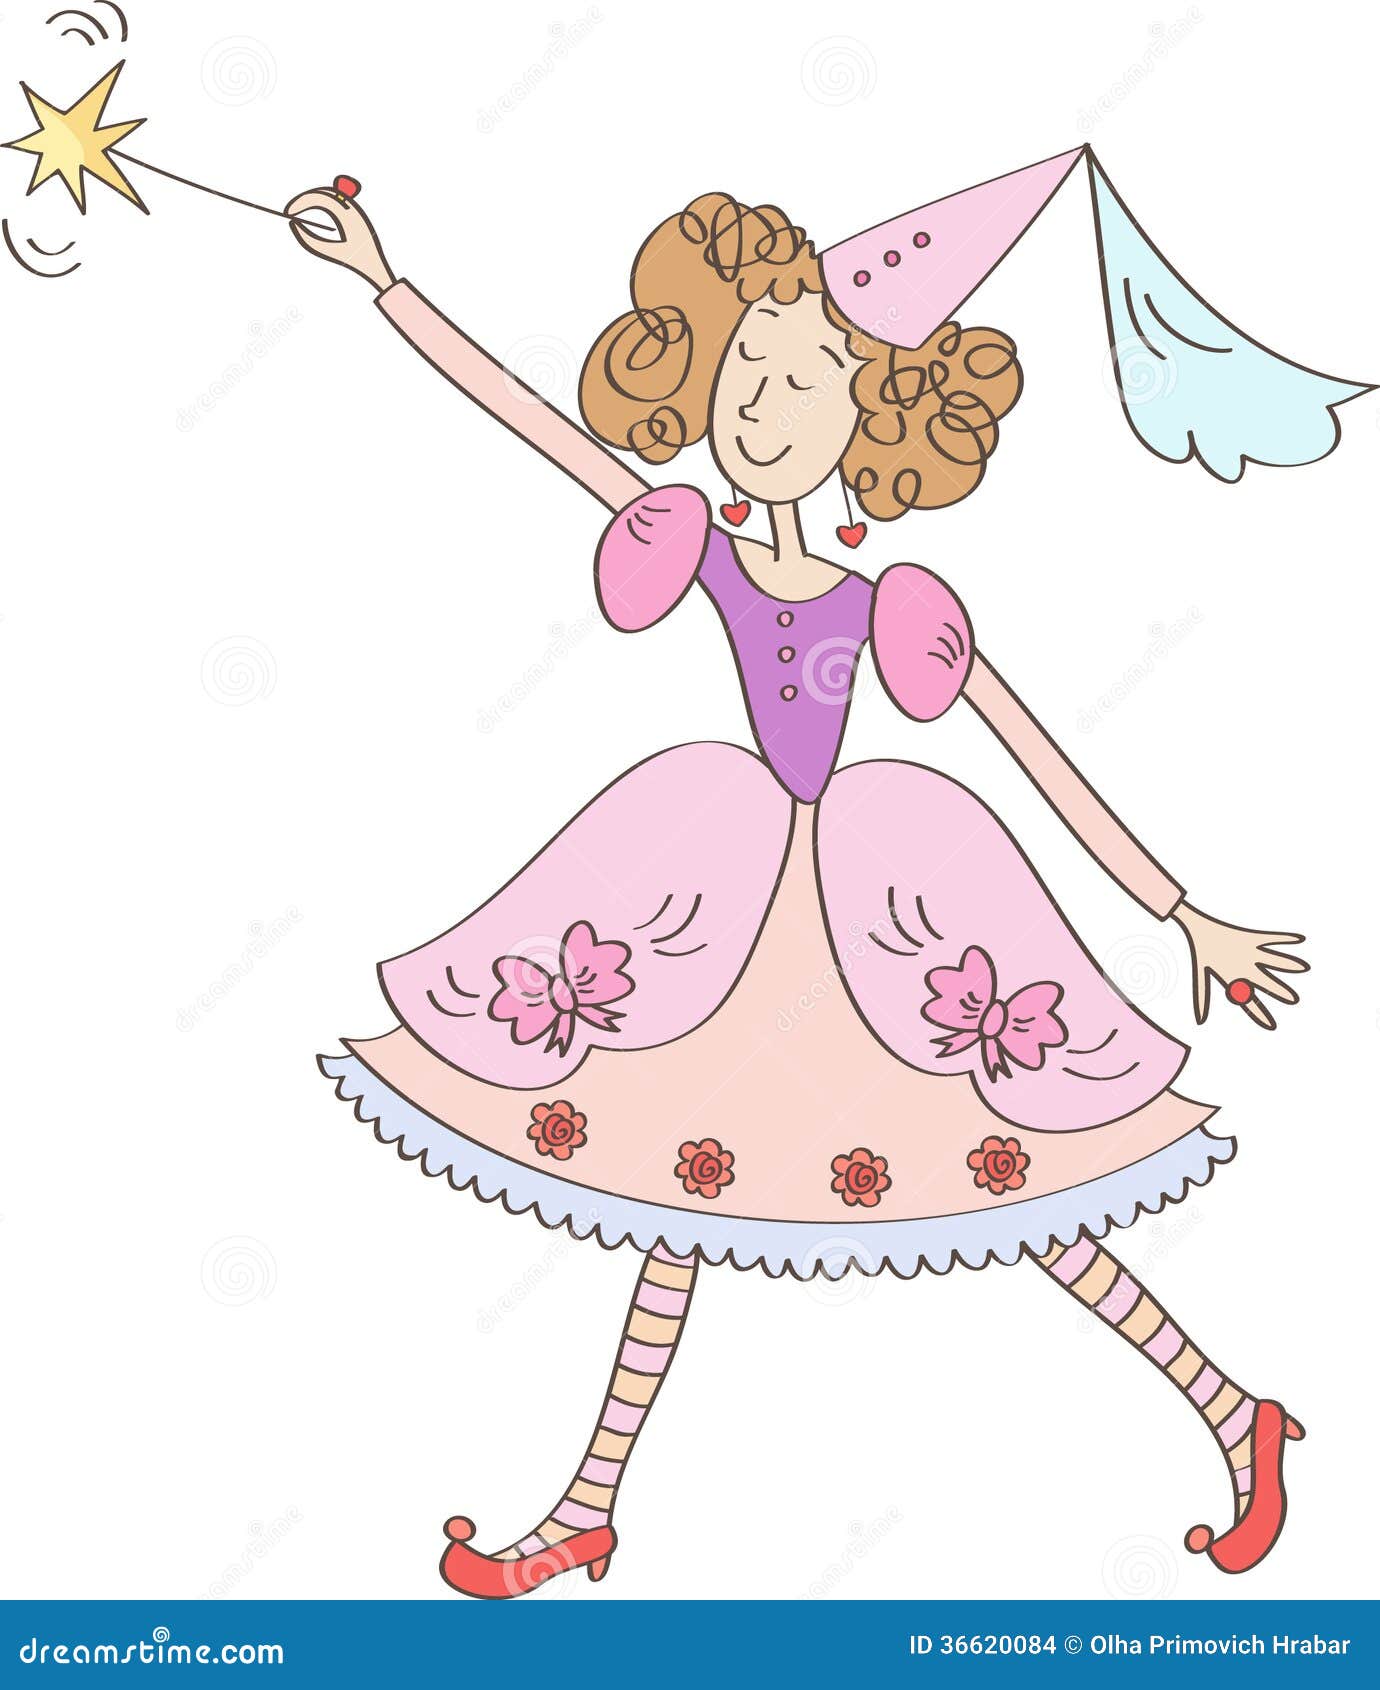 fairy-magic-wand-beautiful-dress-cap-36620084.jpg